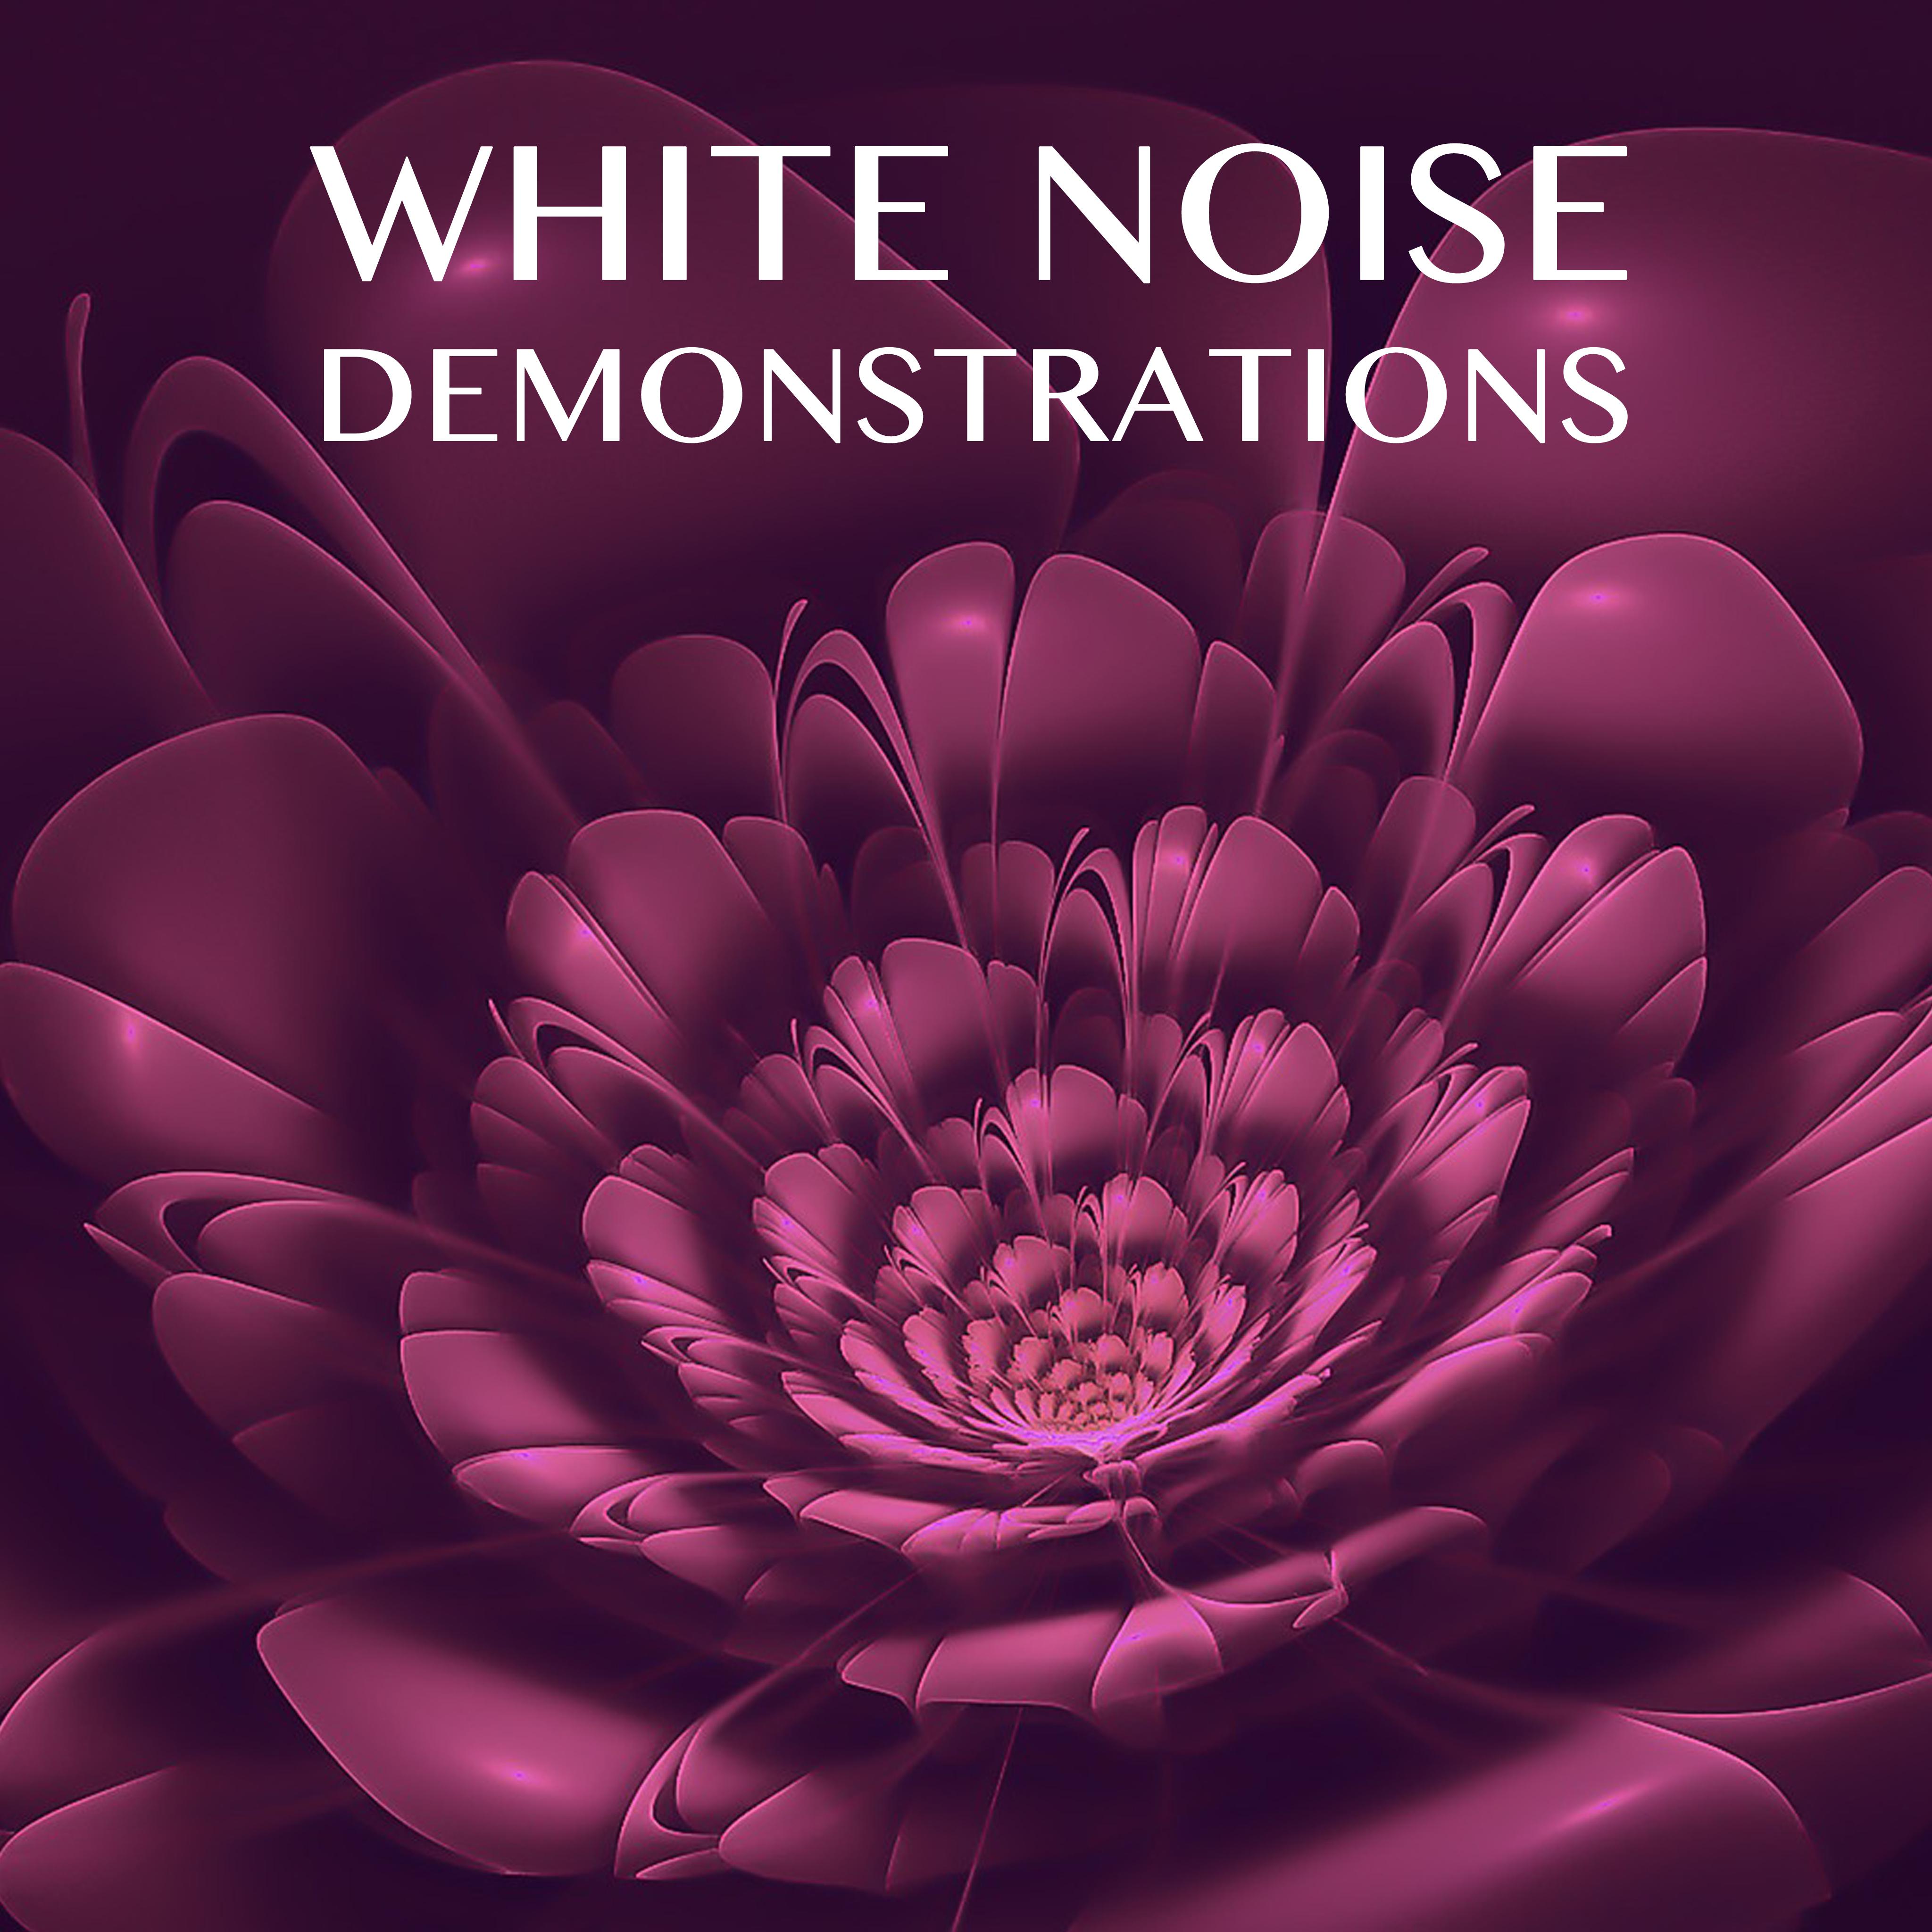 12 White Noise Demonstrations